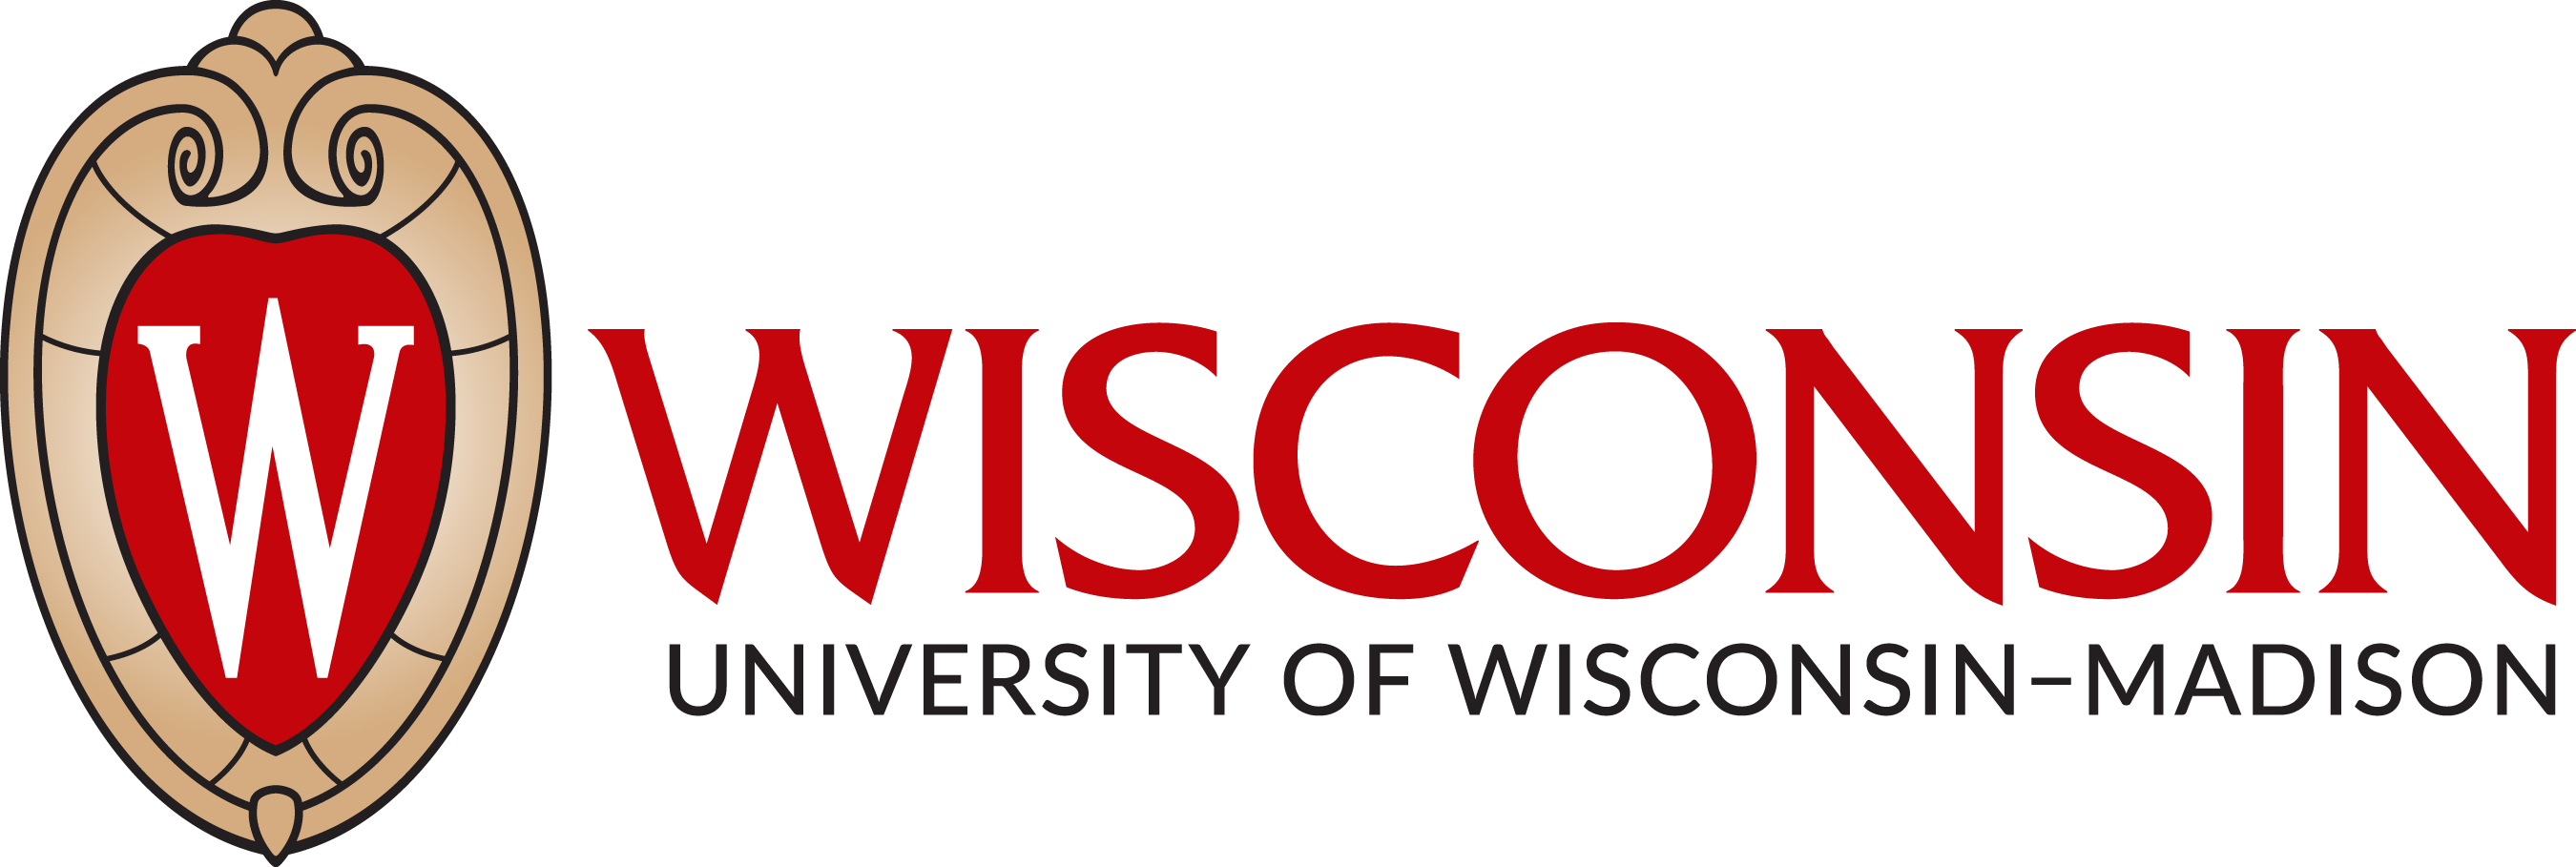 University of Wisconsin Madison Logo